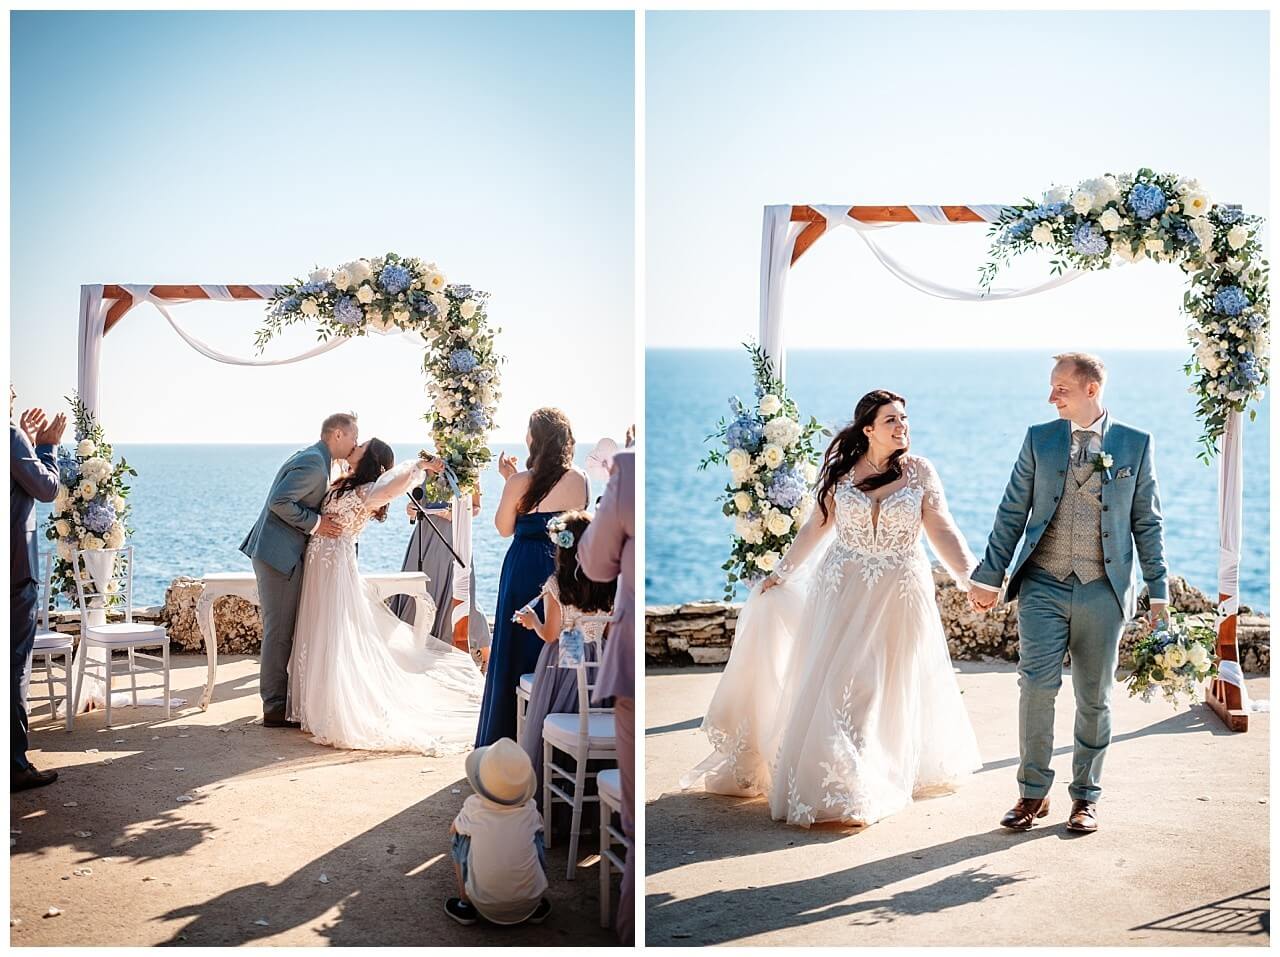 Freie Trauung mit dem Blick aufs Meer und Traubogen aus Holz mit weißen Stoff und blau weißen Blumen bei einer Hochzeit in einer privaten Finka in Kroatien